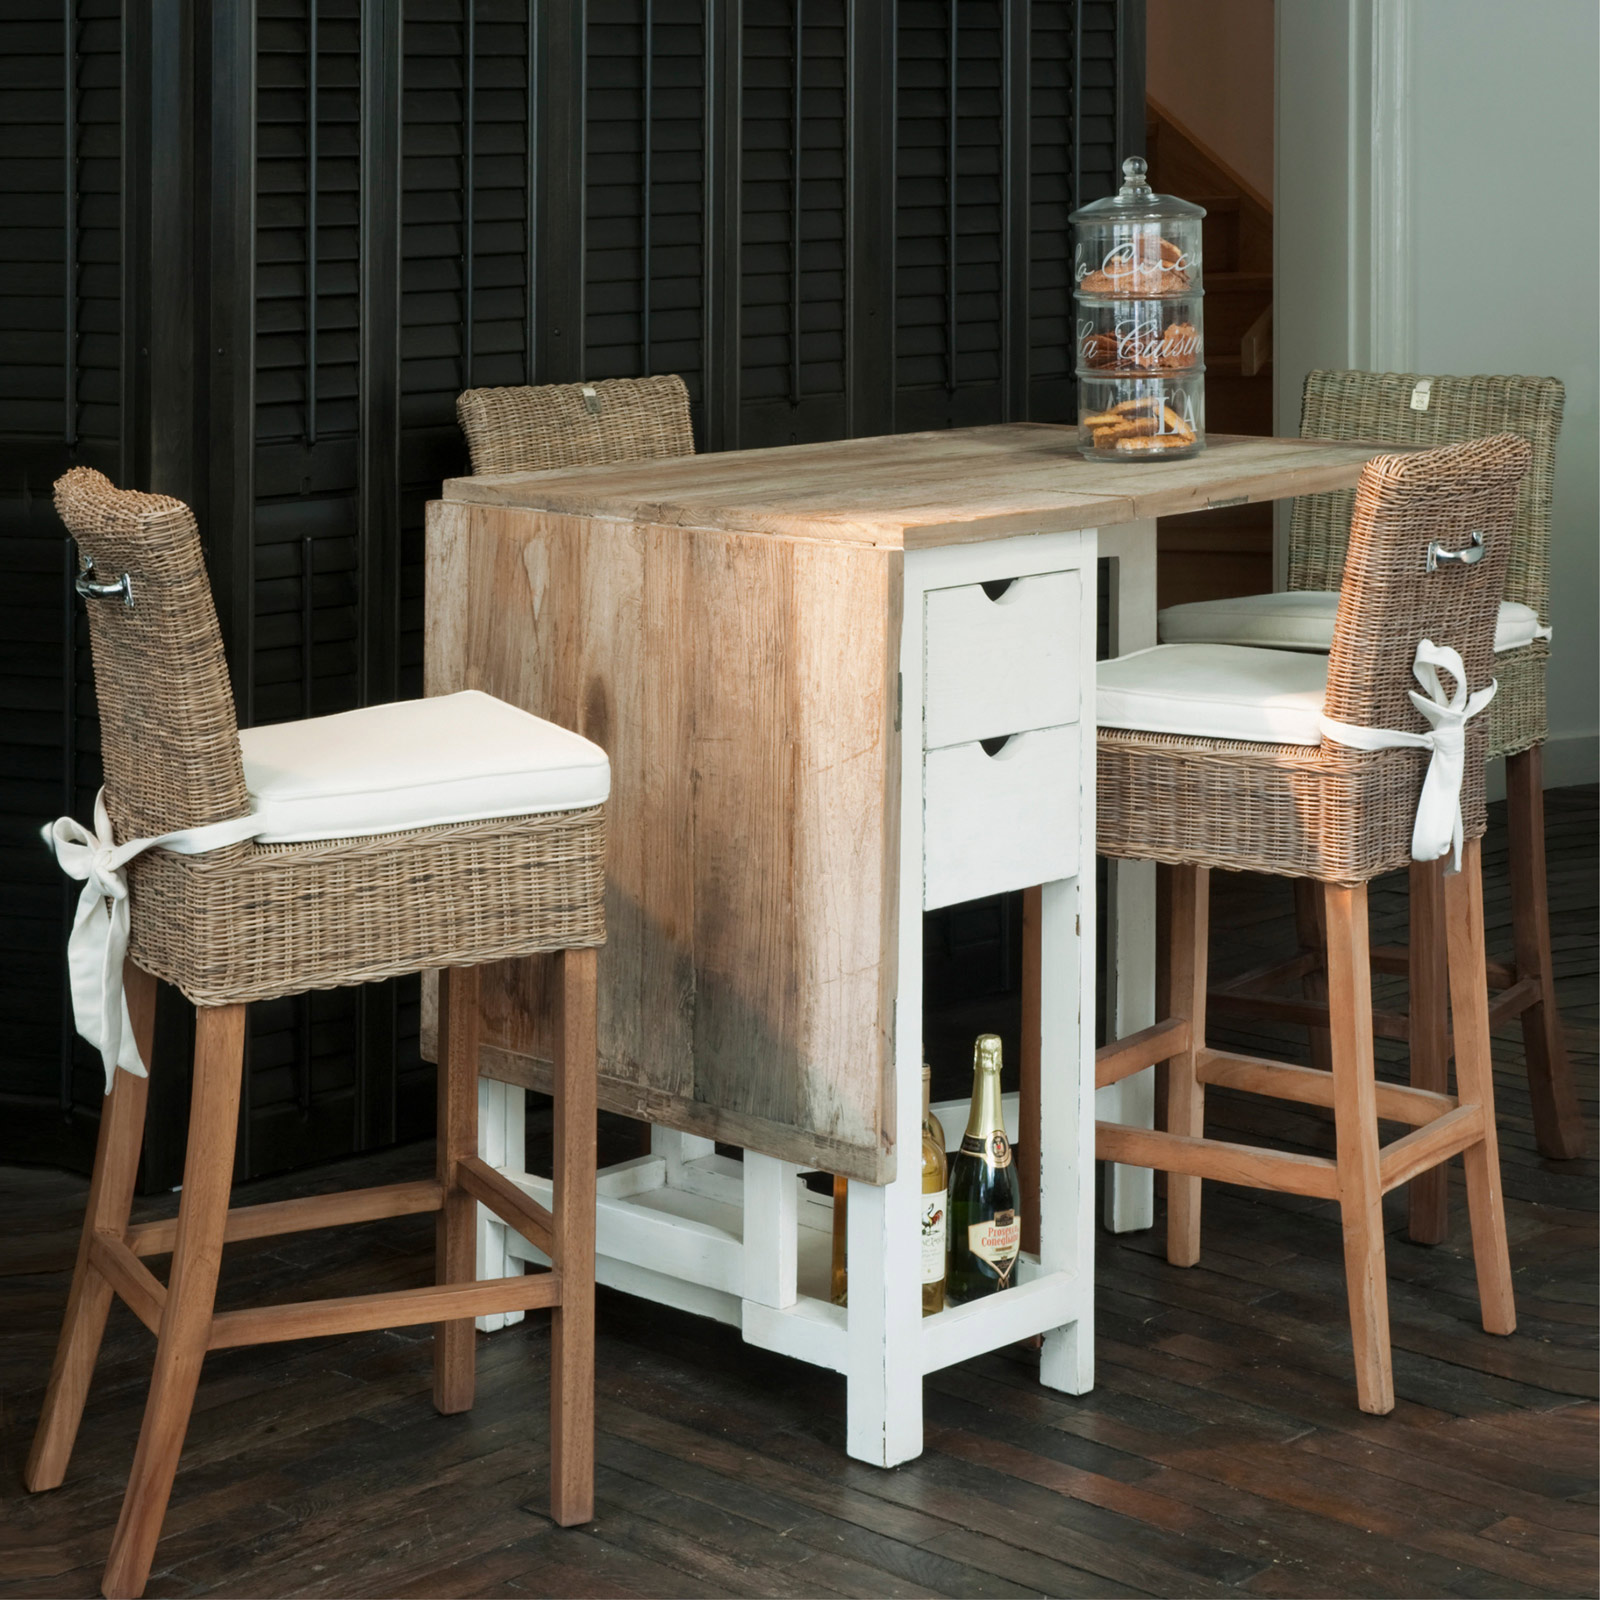 Beschikbaar wijn stil Riviera Maison - Rustic rattan bar chair | Bartafels | Reno. Meubelen &  keukens voor elk budget.